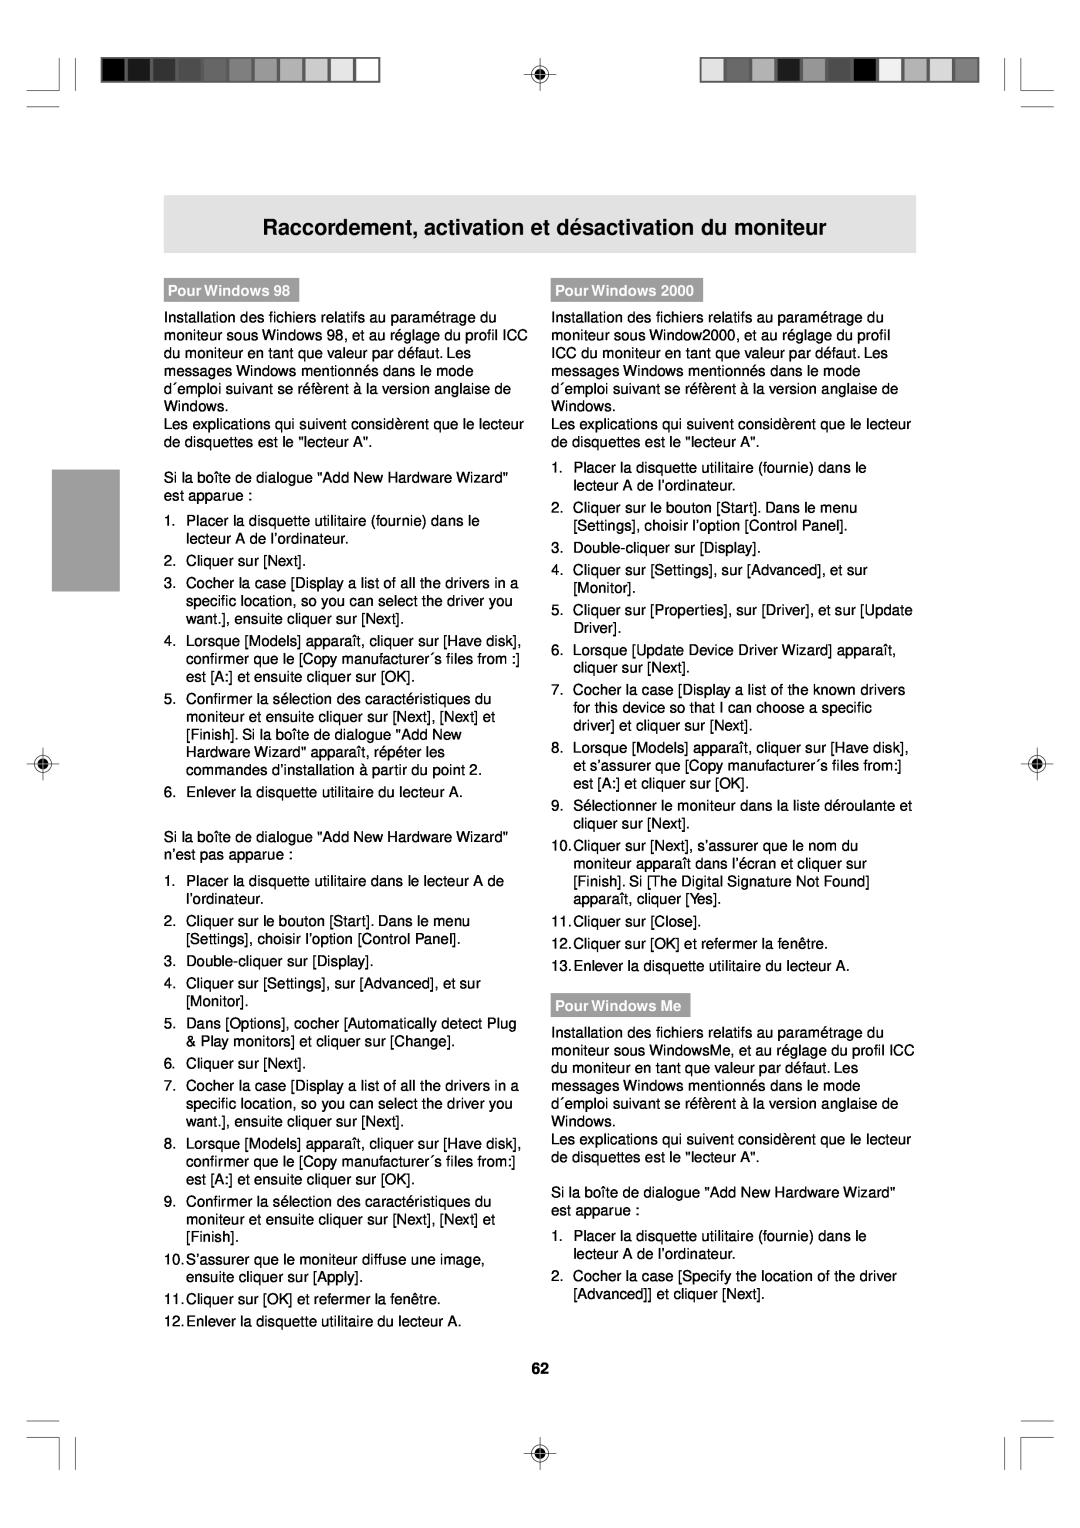 Sharp LL-T15V1 operation manual Pour Windows Me, Raccordement, activation et désactivation du moniteur 